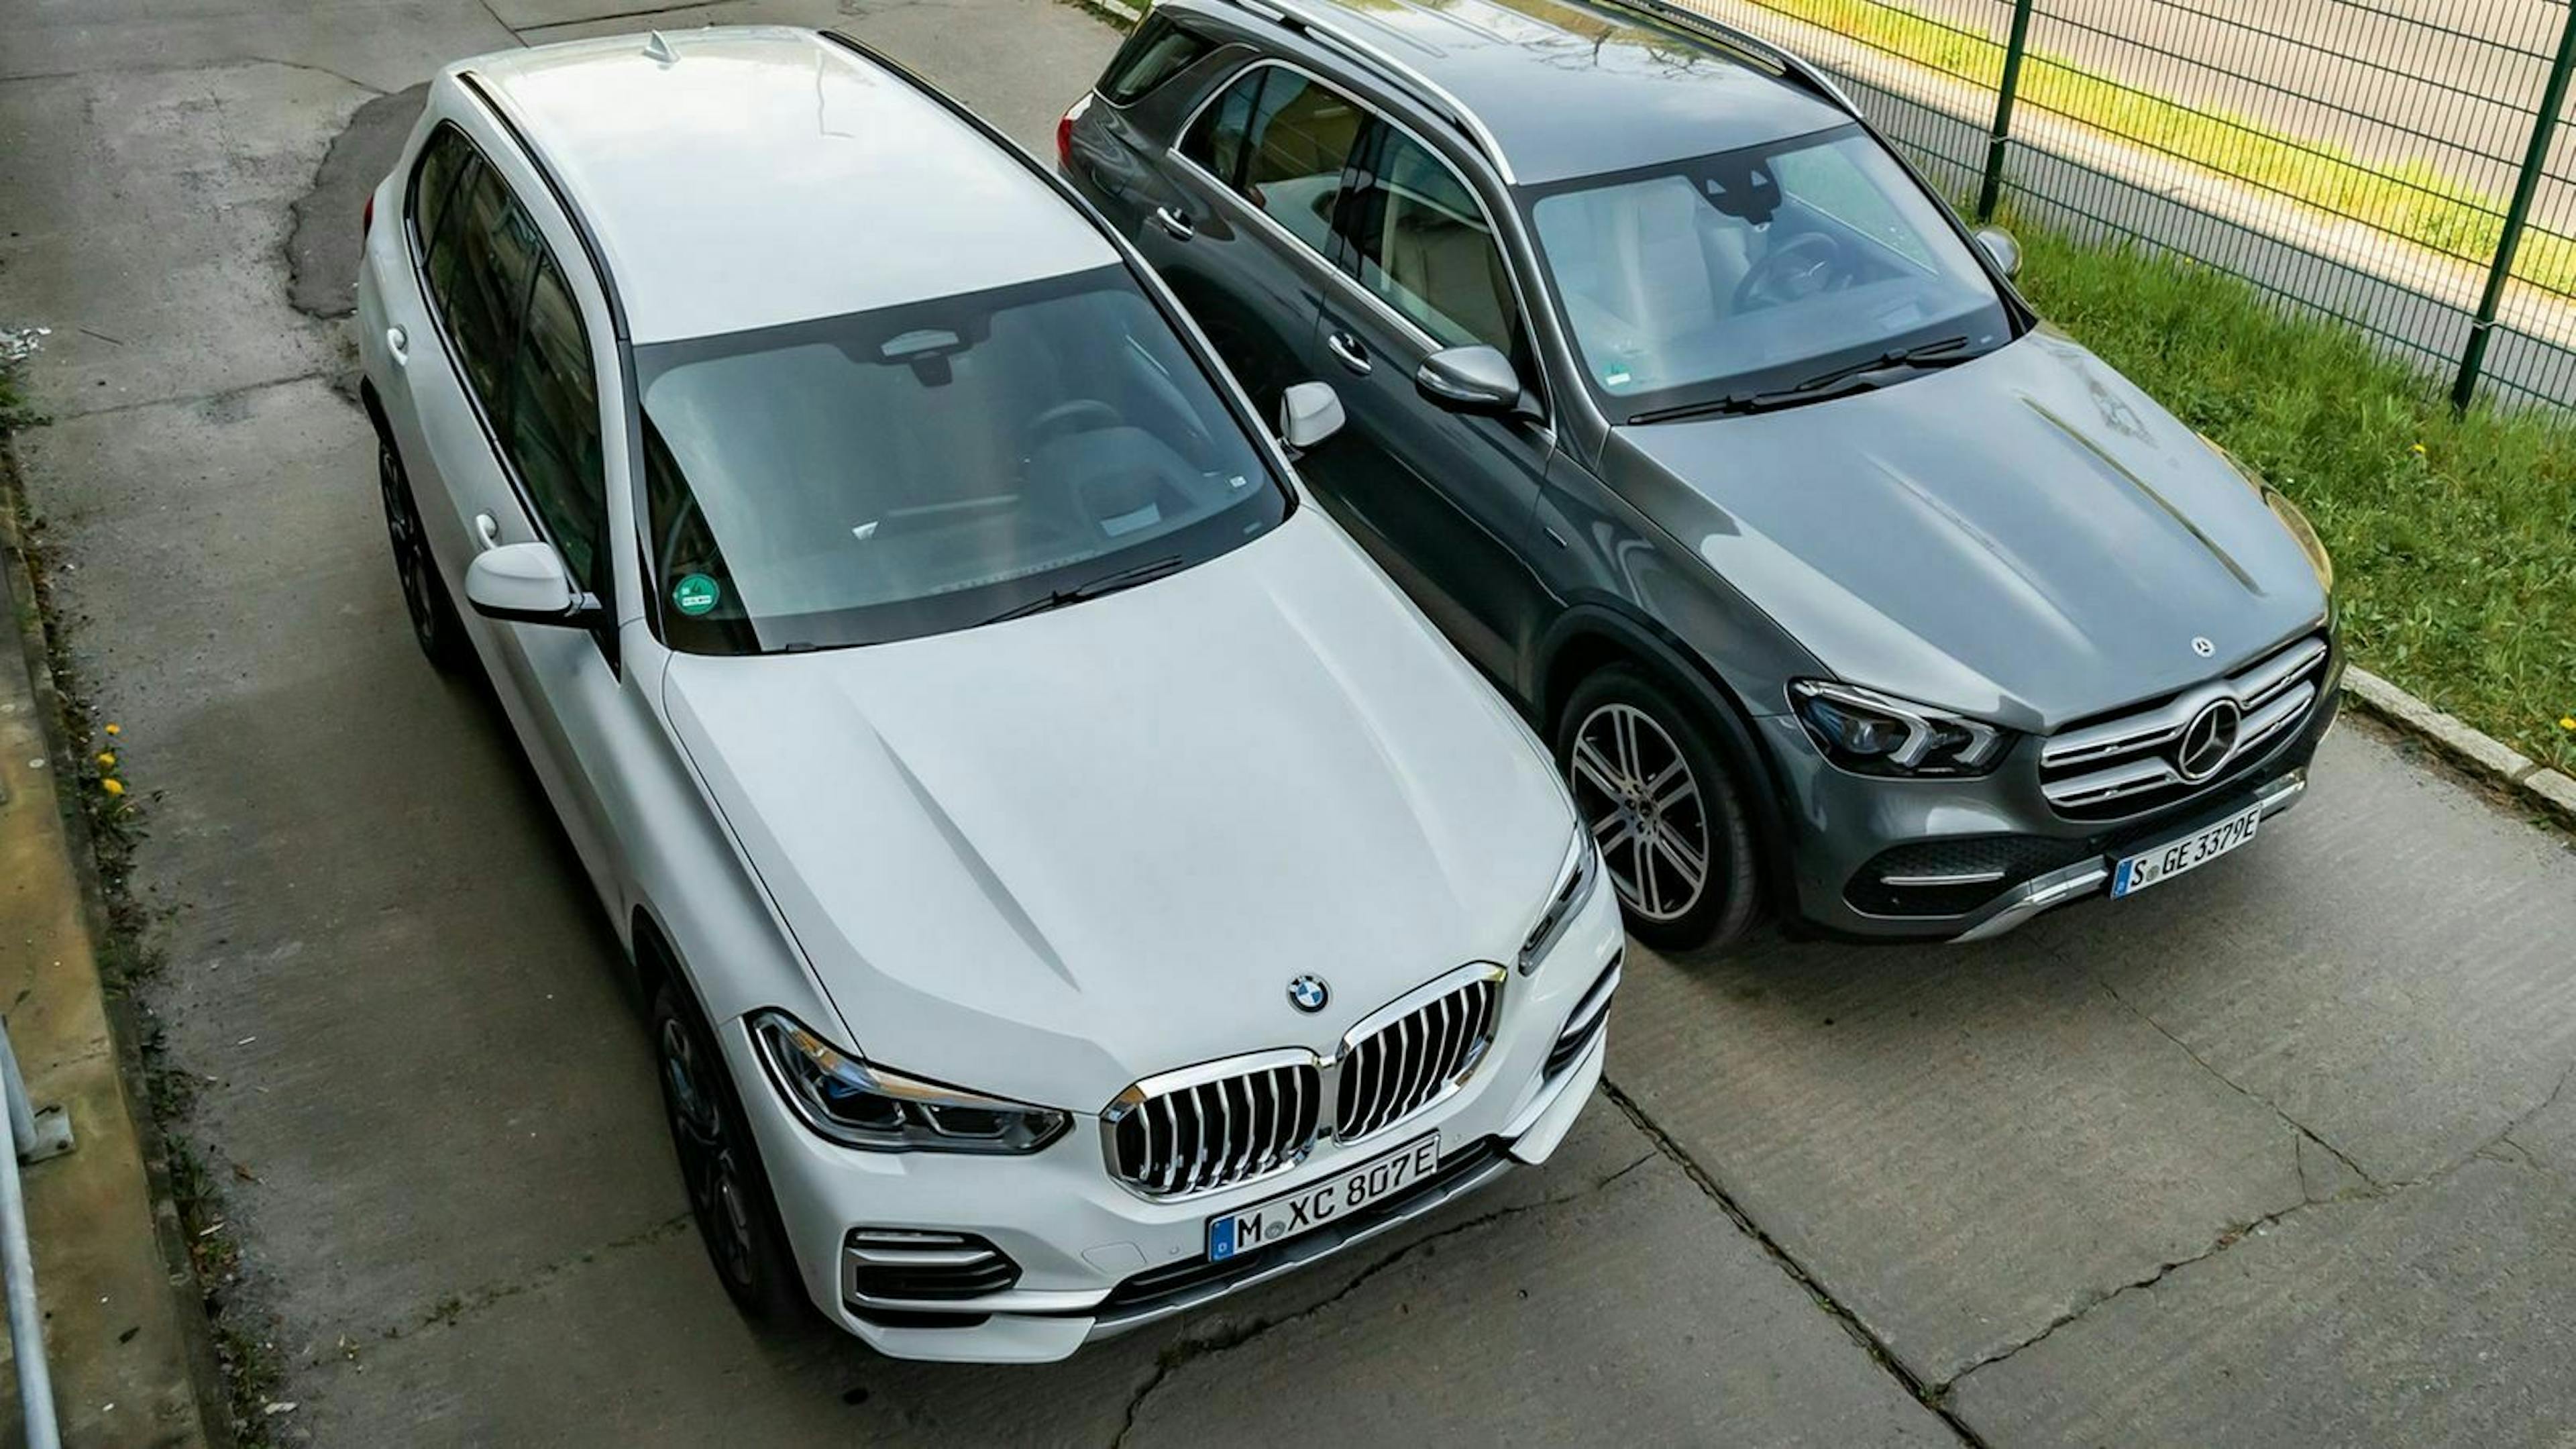 Zu sehen sind der BMW X5 (links) und der Mercedes GLE (rechts) von vorne